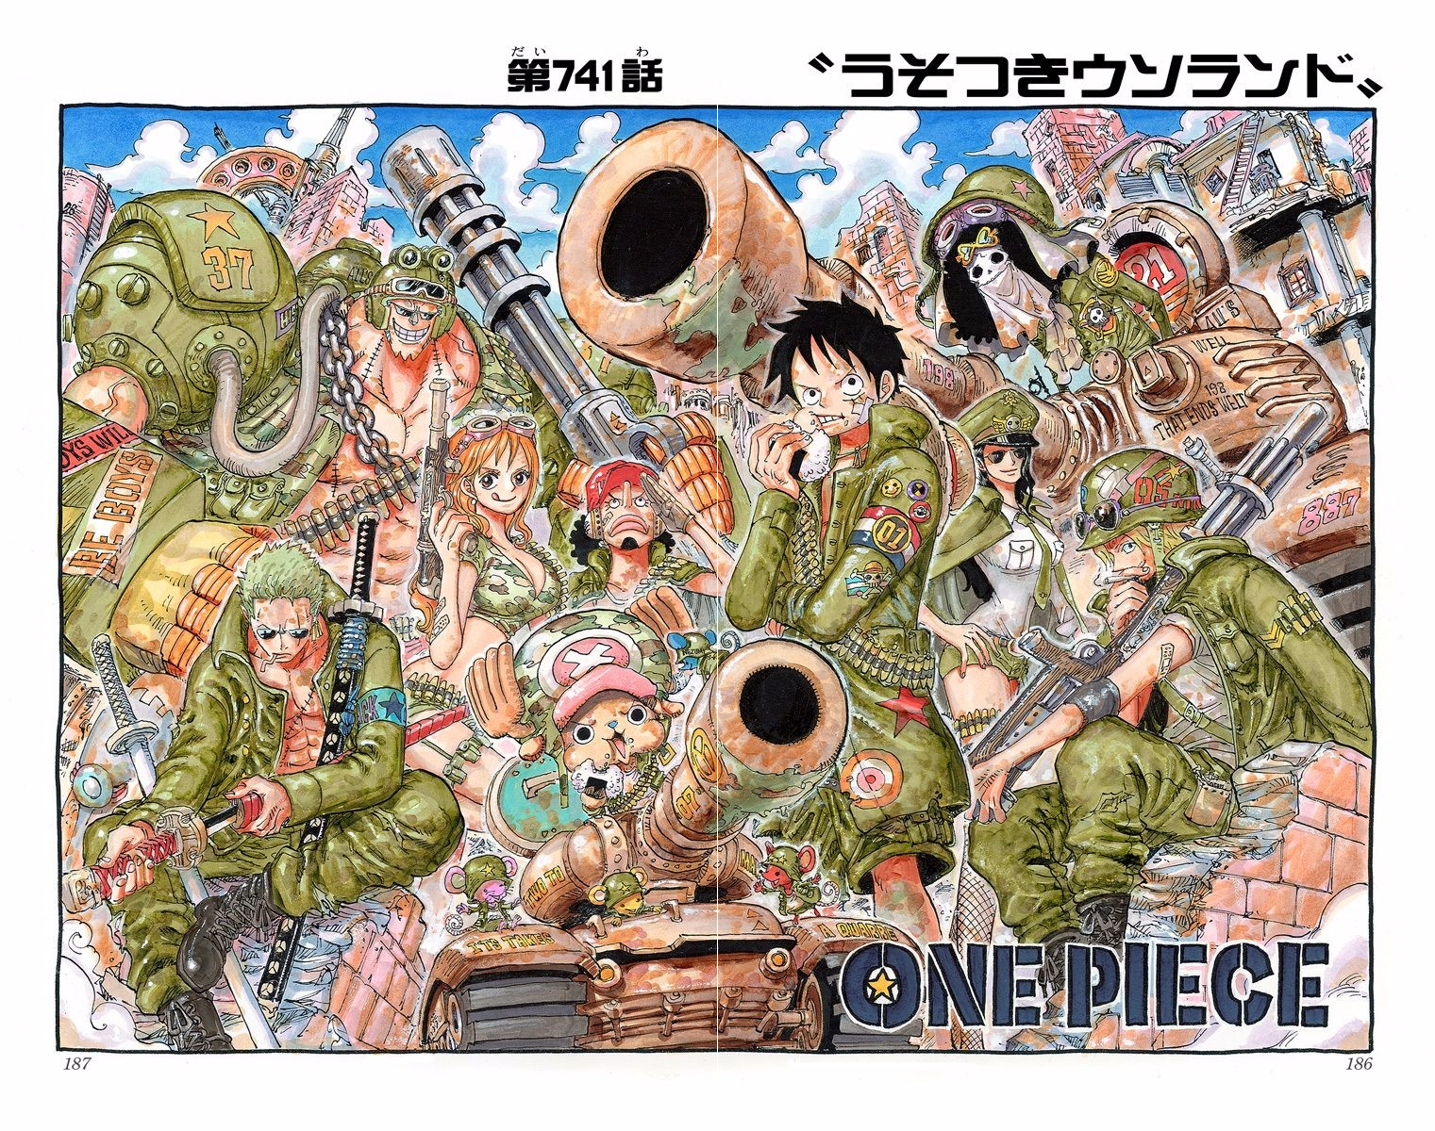 Capitulo 741 One Piece Wiki Fandom